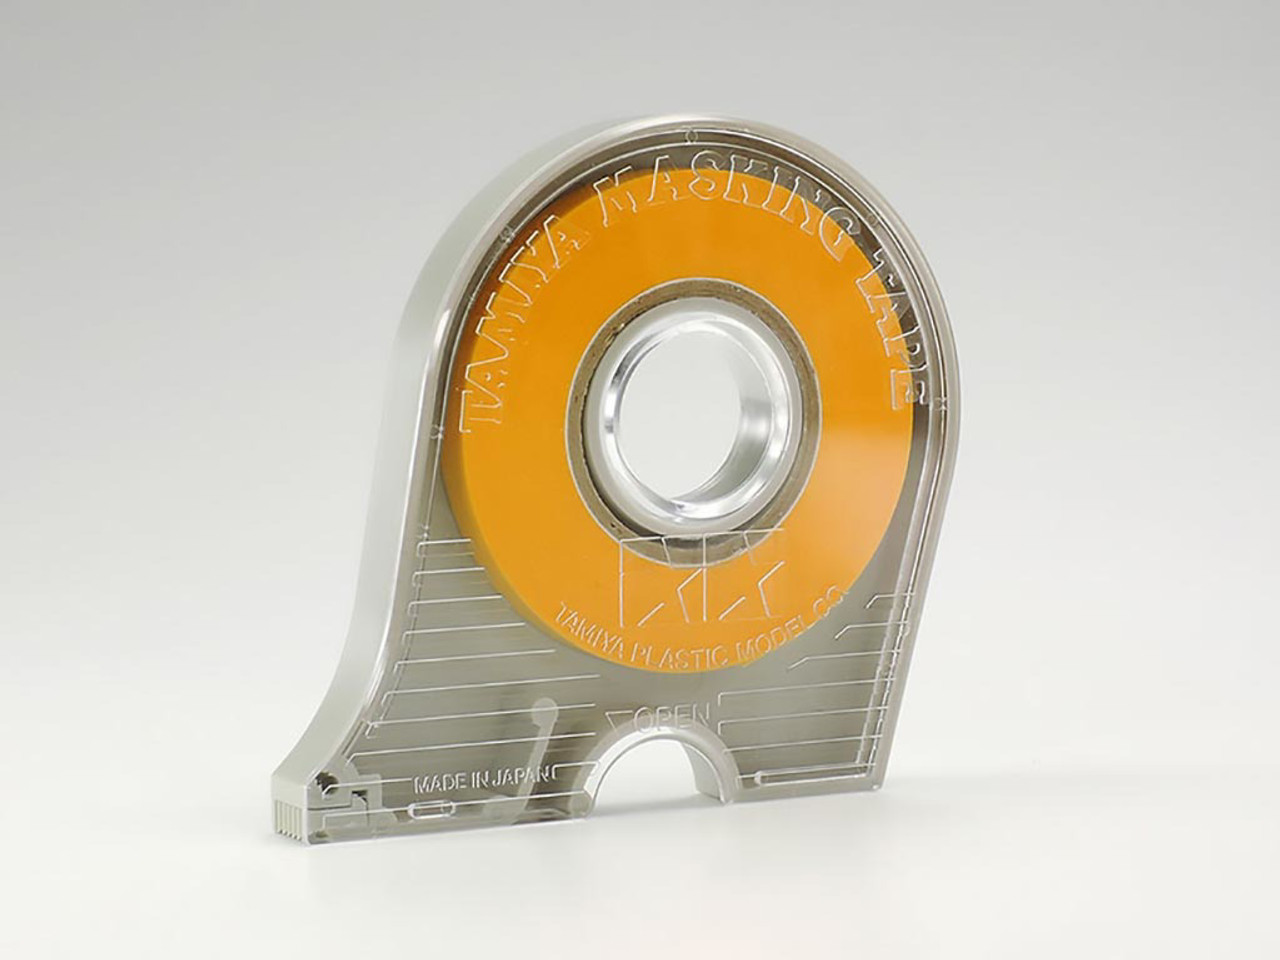 Tamiya Masking Tape with Dispenser 6 mm